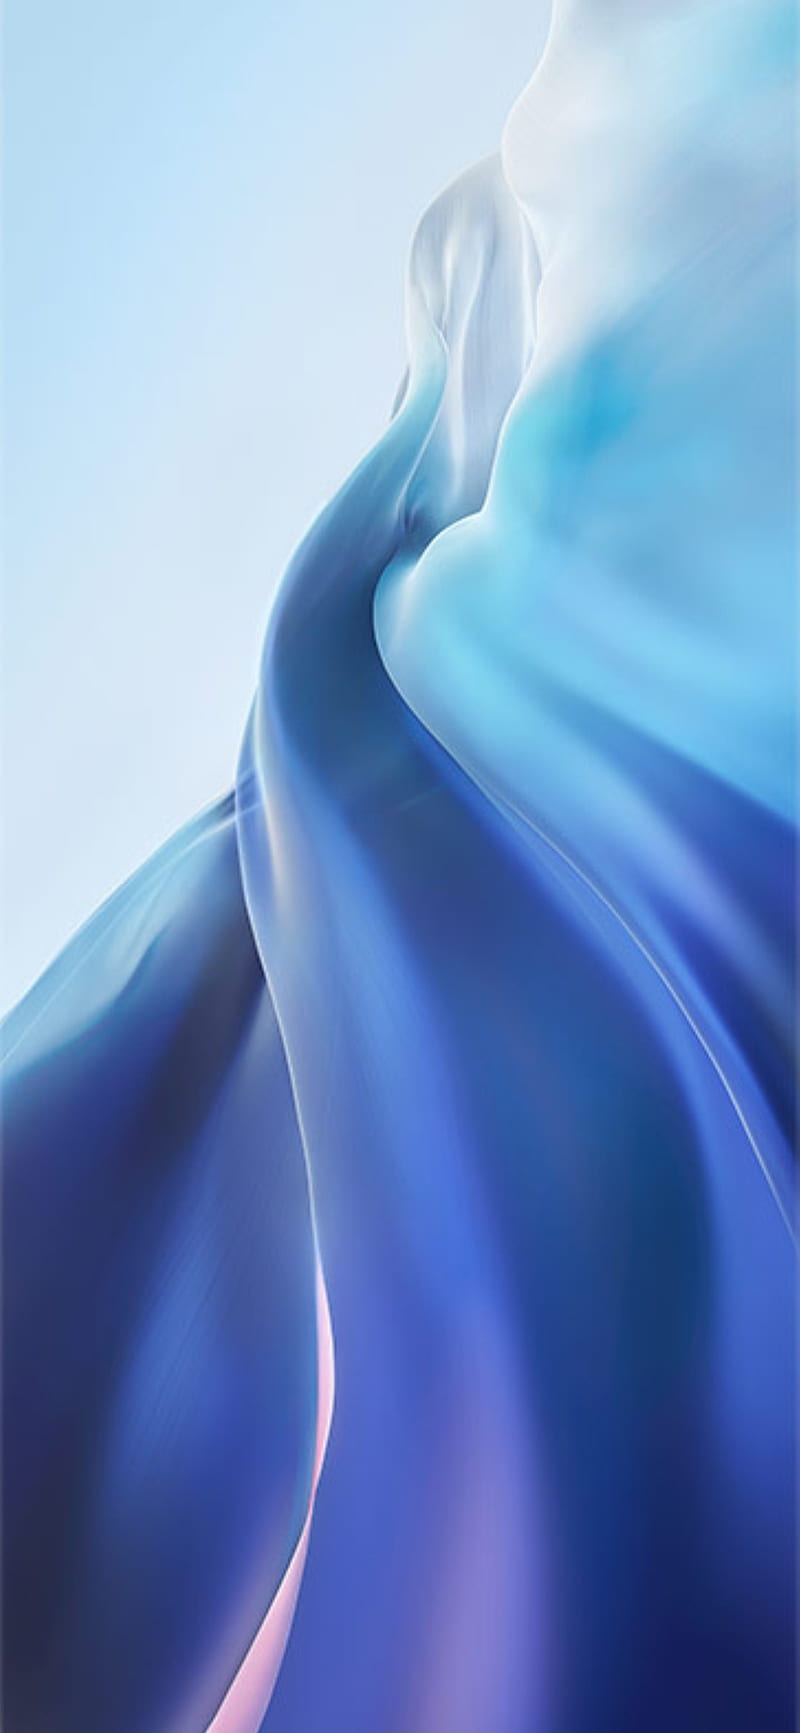 Mi11 Blue - HD phone wallpaper: Màu xanh chắc hẳn đã không còn xa lạ với những chiếc điện thoại cao cấp hiện nay. Và chiếc Mi11 Blue với màu xanh độc đáo và chất lượng màn hình HD sẽ mang đến cho bạn những bức hình nền tuyệt đẹp và đậm chất cá tính. Hãy cùng tìm hiểu về sản phẩm qua hình ảnh sống động.